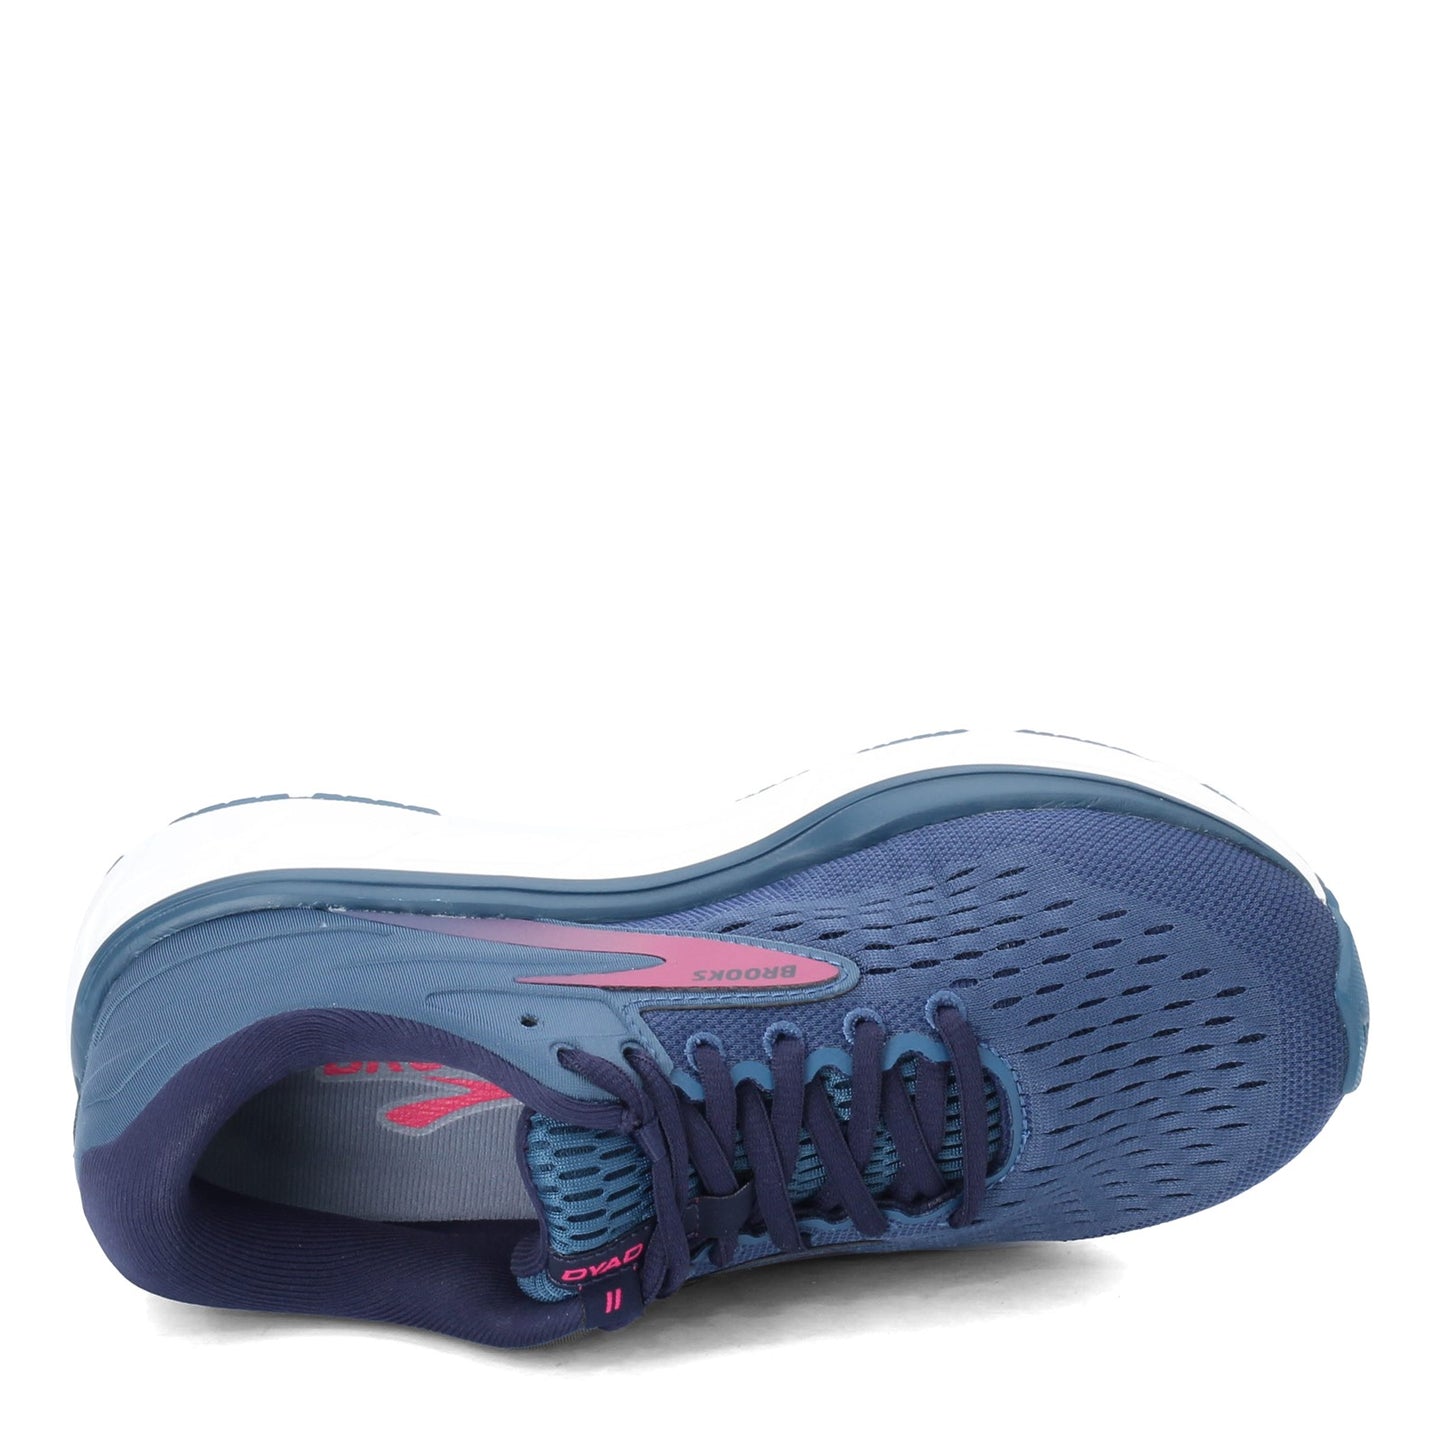 Peltz Shoes  Women's Brooks Dyad 11 Running Shoe - Extra Wide Blue/Navy/Beetroot 120312 2E 490